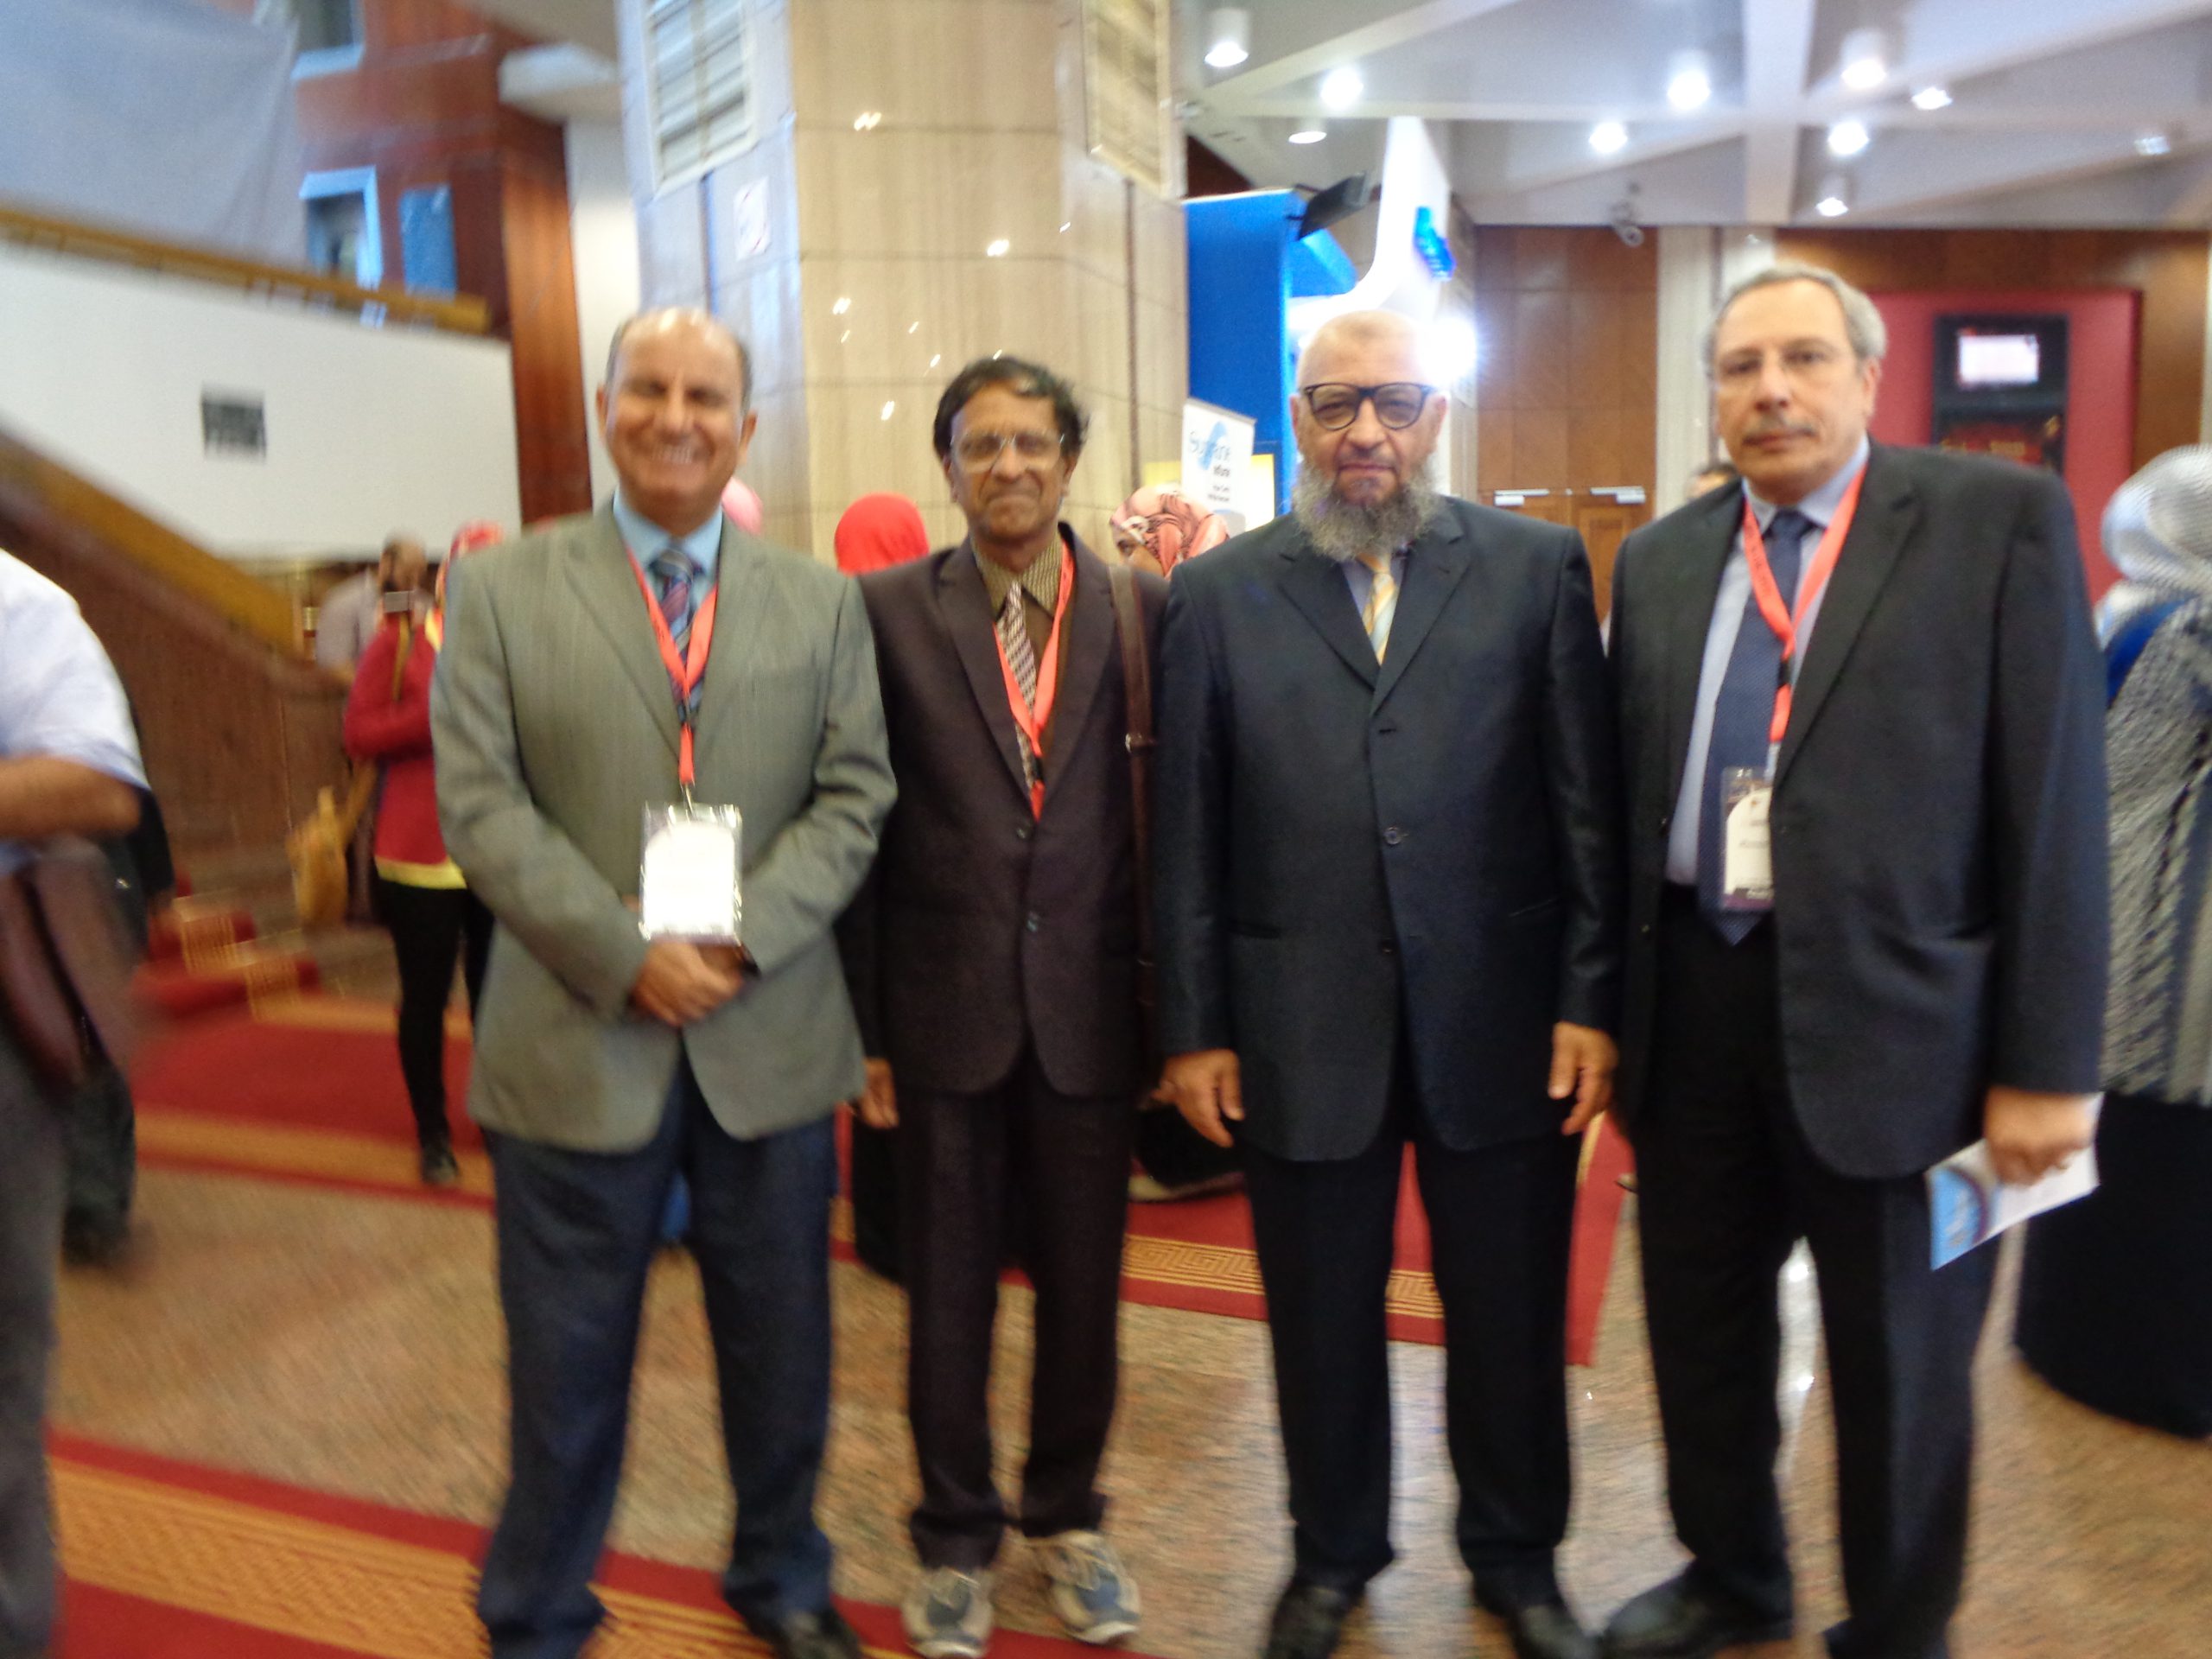 Bhavani Shankar Kodali Egypt meeting 